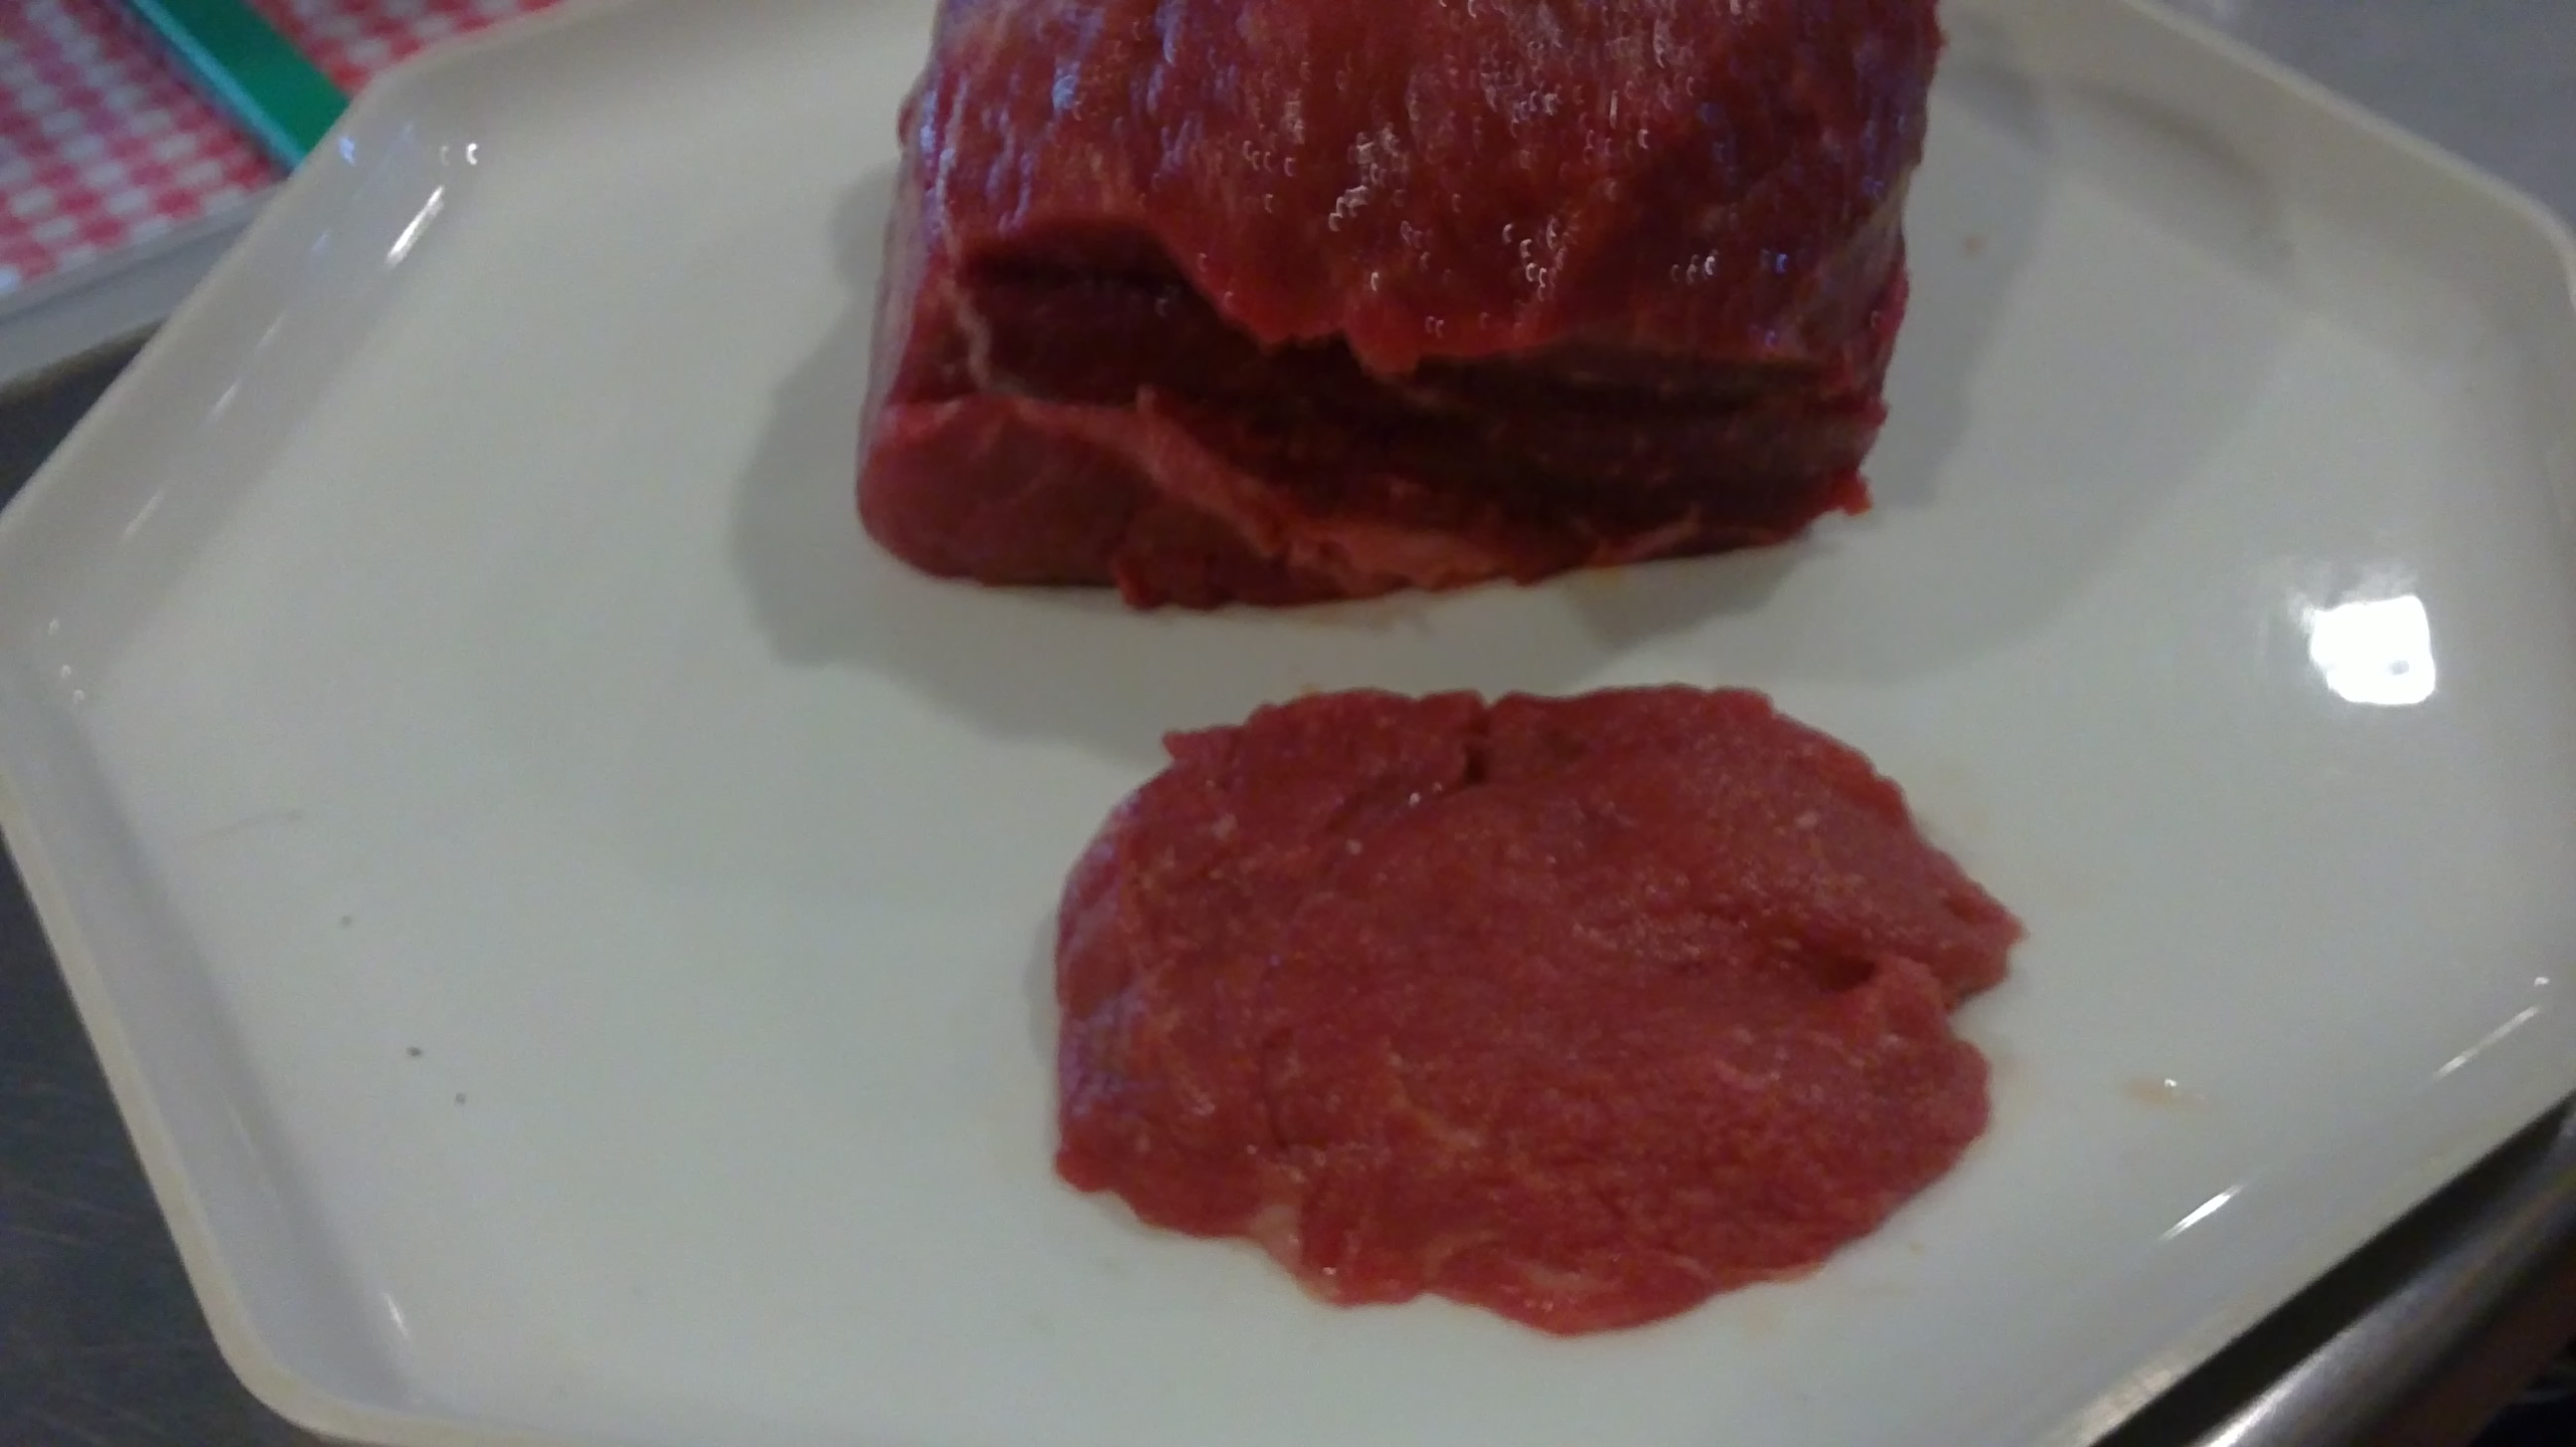 Aussie/NZ Prime Beef Tenderloin